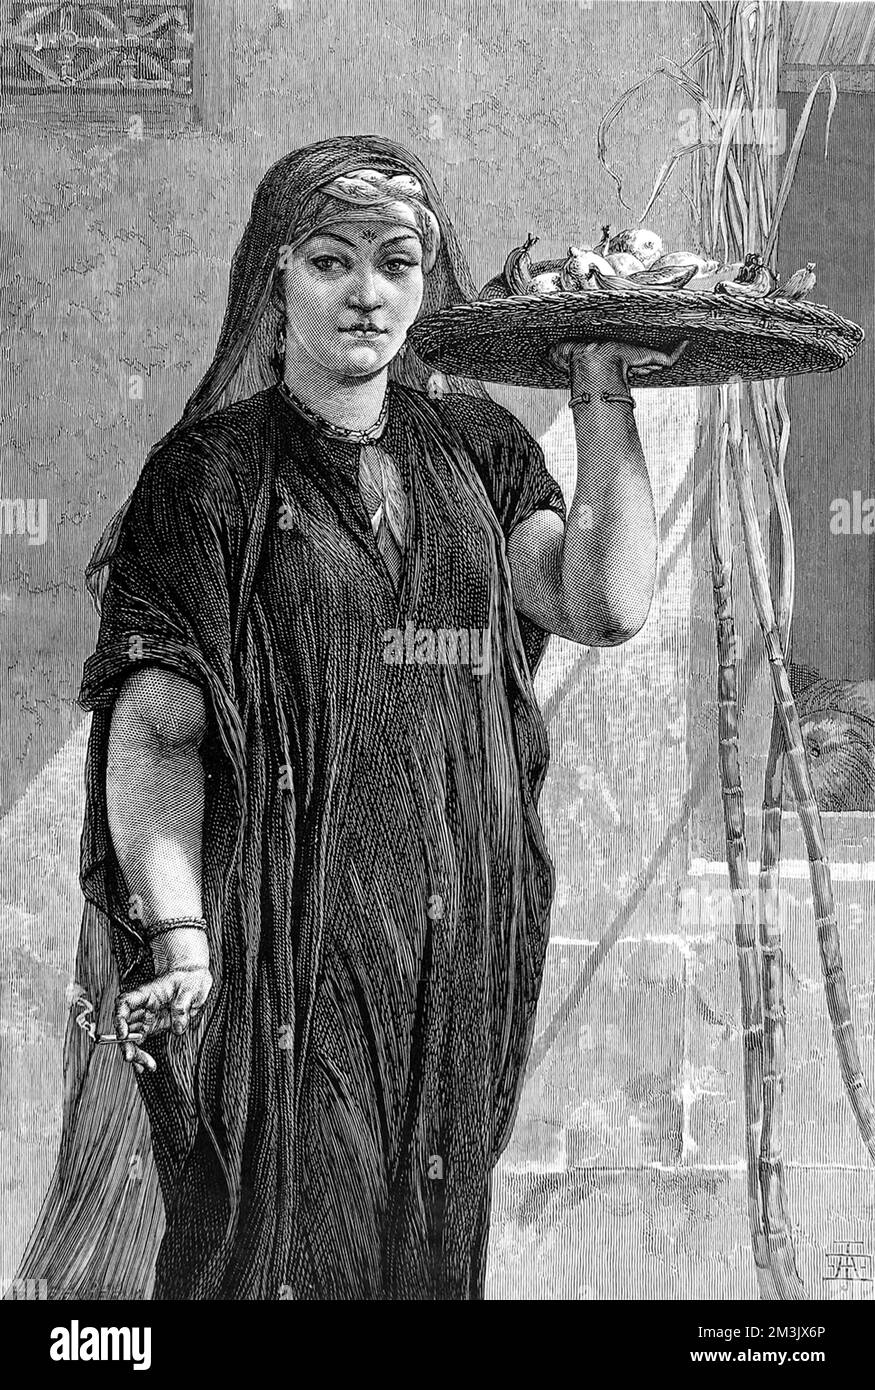 Gravure réalisée à partir d'une peinture de F. Goodall, intitulée "Une femme fruitière du Caire", exposée à la New British institution, 1875. Date: 1875 Banque D'Images